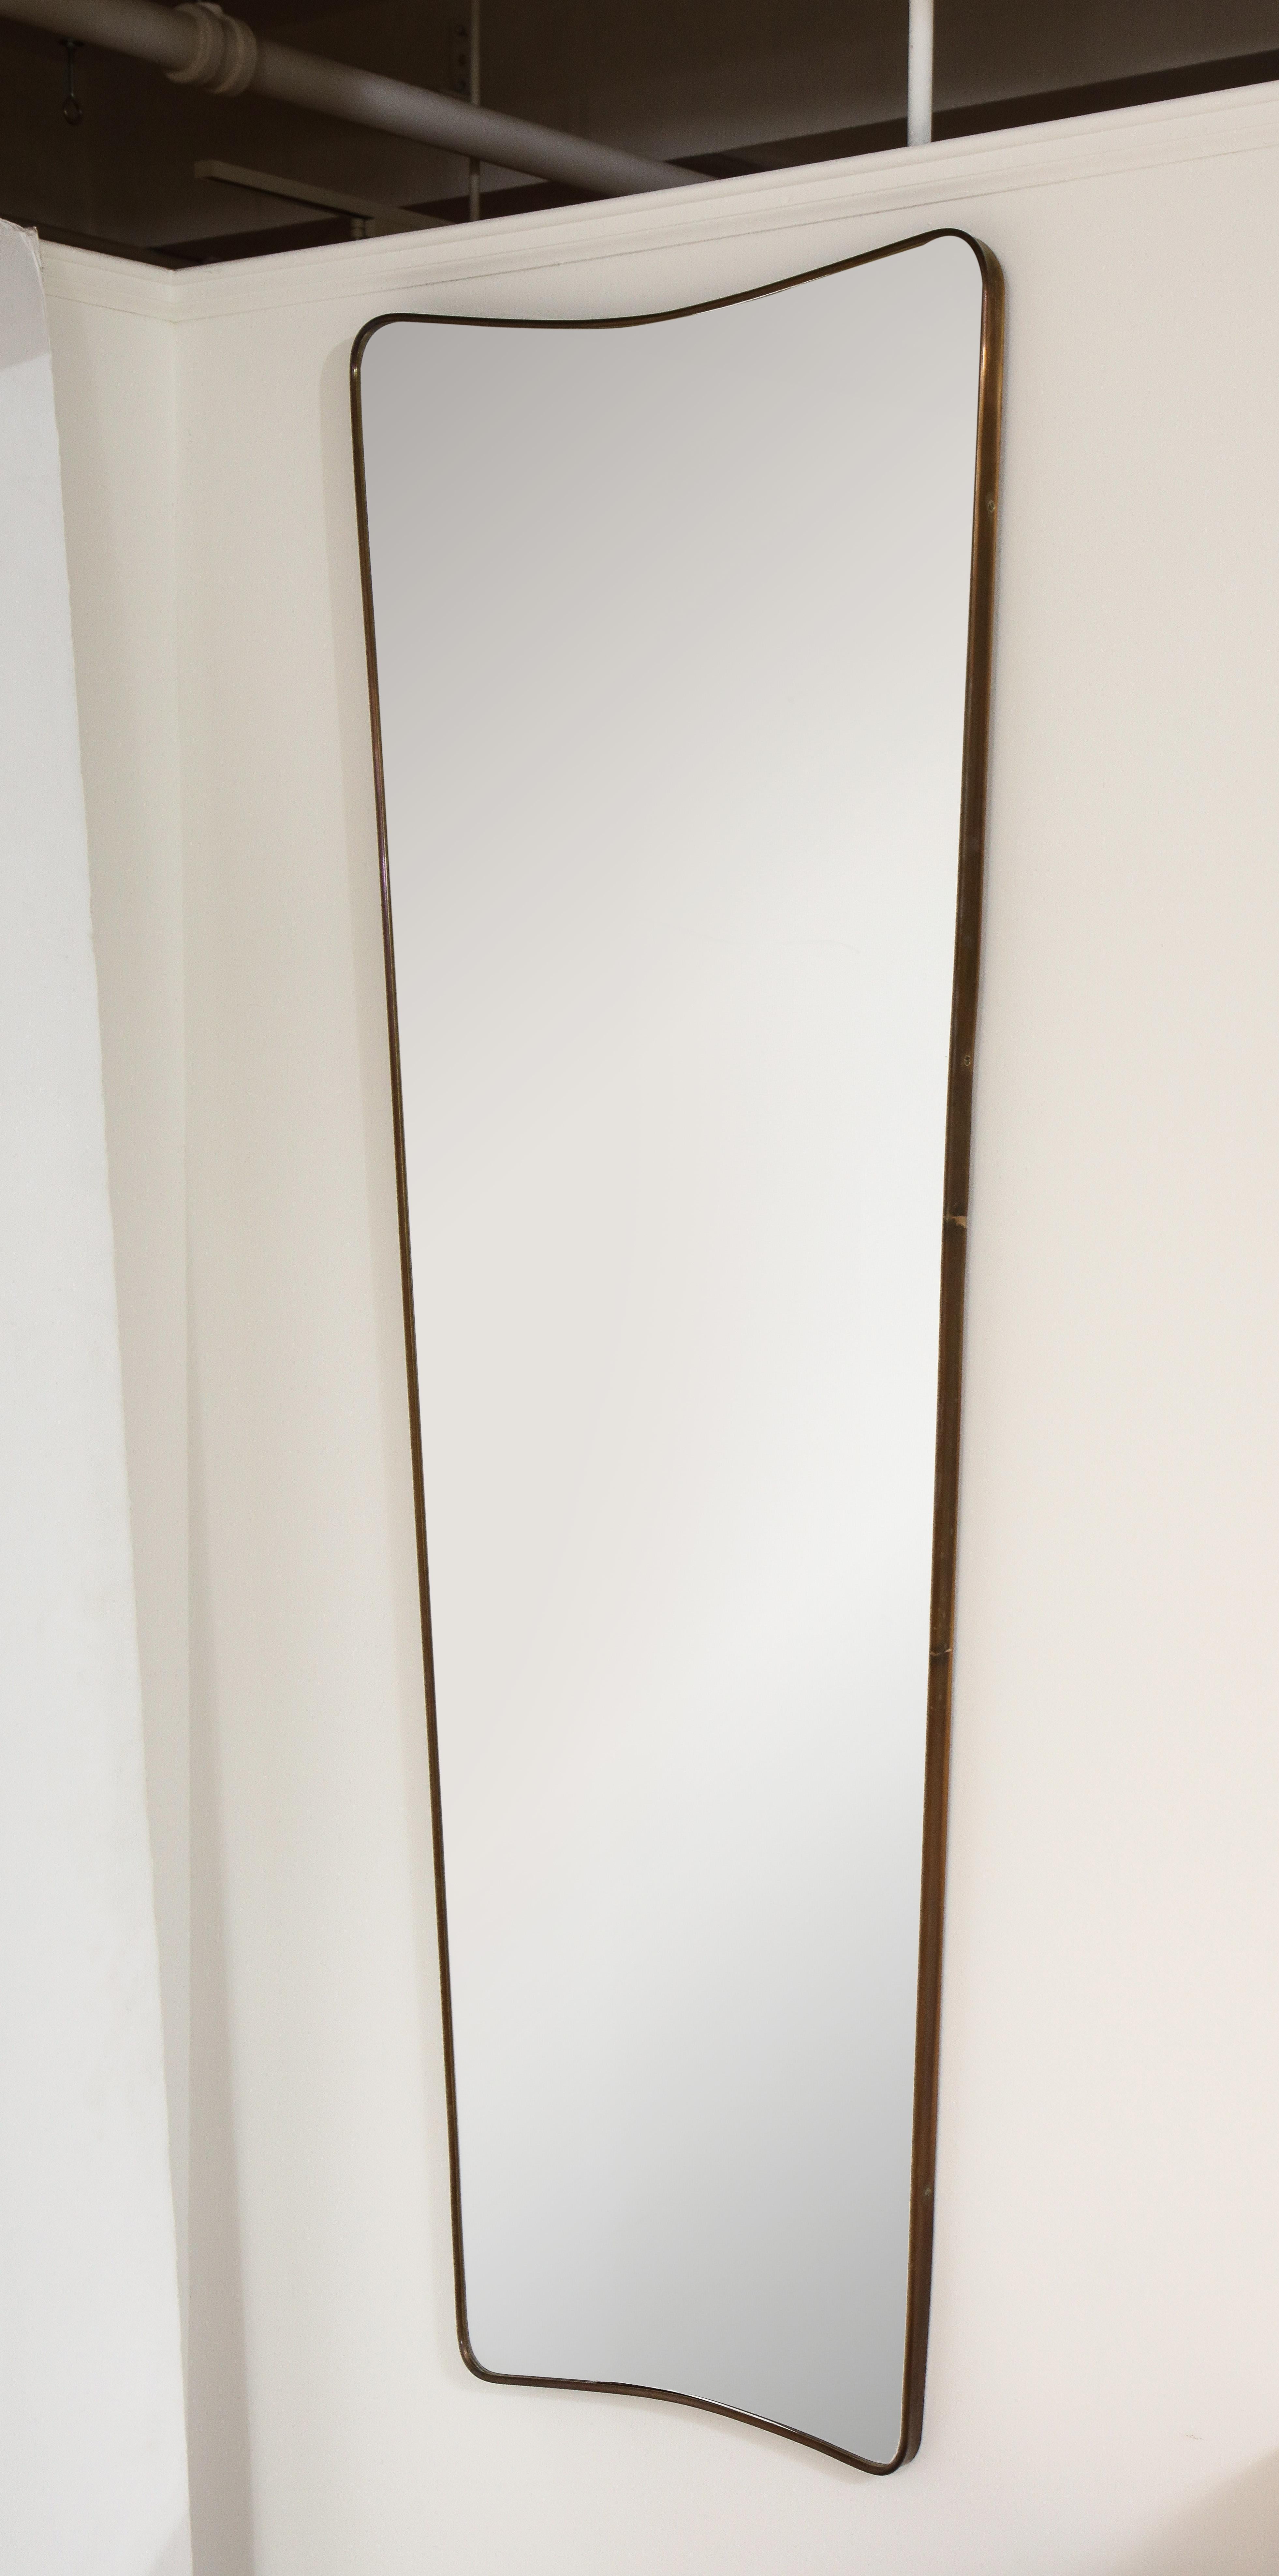 Un miroir moderniste italien en laiton, élégamment allongé et effilé, de grande taille et avec une belle patine d'origine en laiton. Le sommet présente un arc simple, repris également à la base. Ce design italien très simple et classique s'adapte à